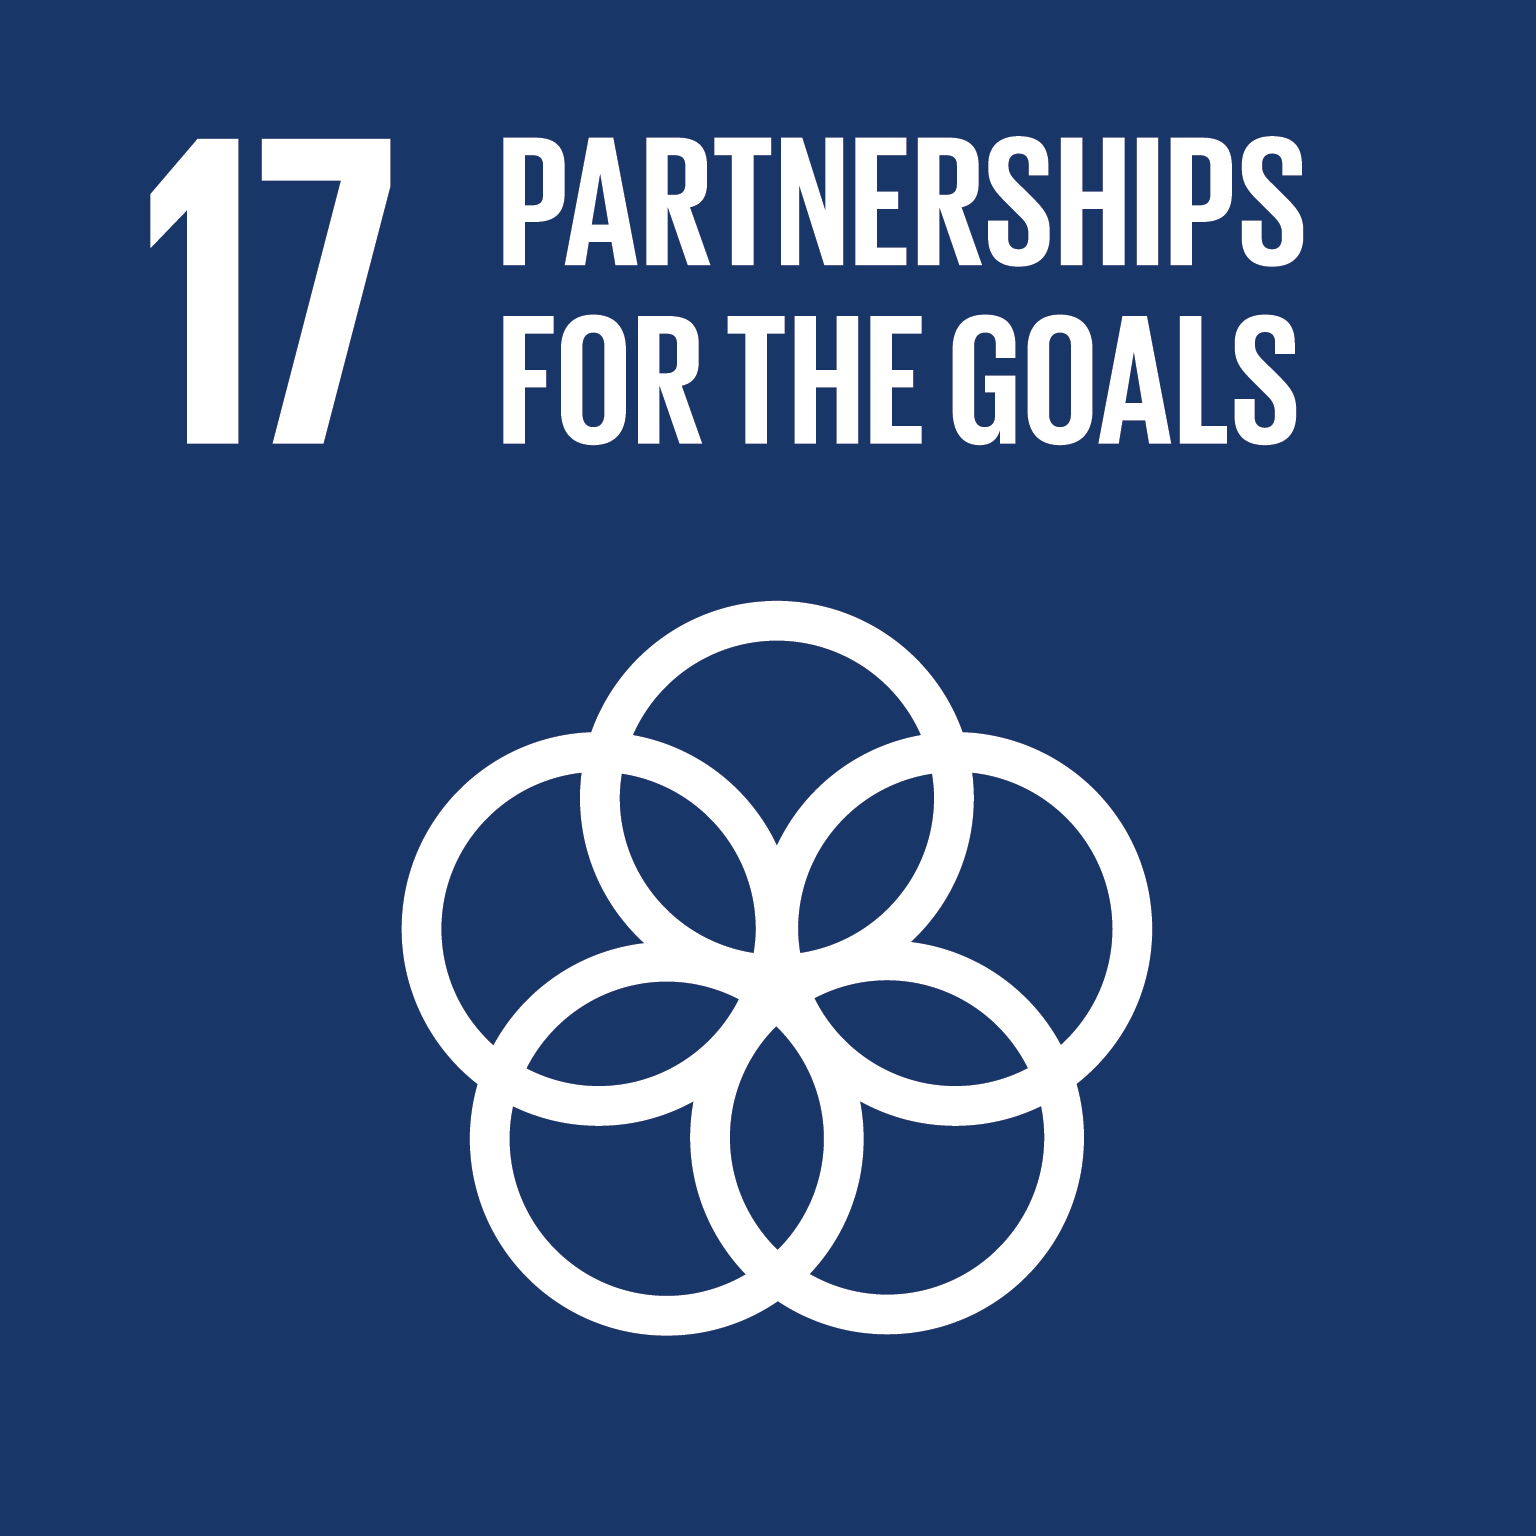 ООН стремится расширять и поддерживать достижение целей в области устойчивого развития и глобального партнерства